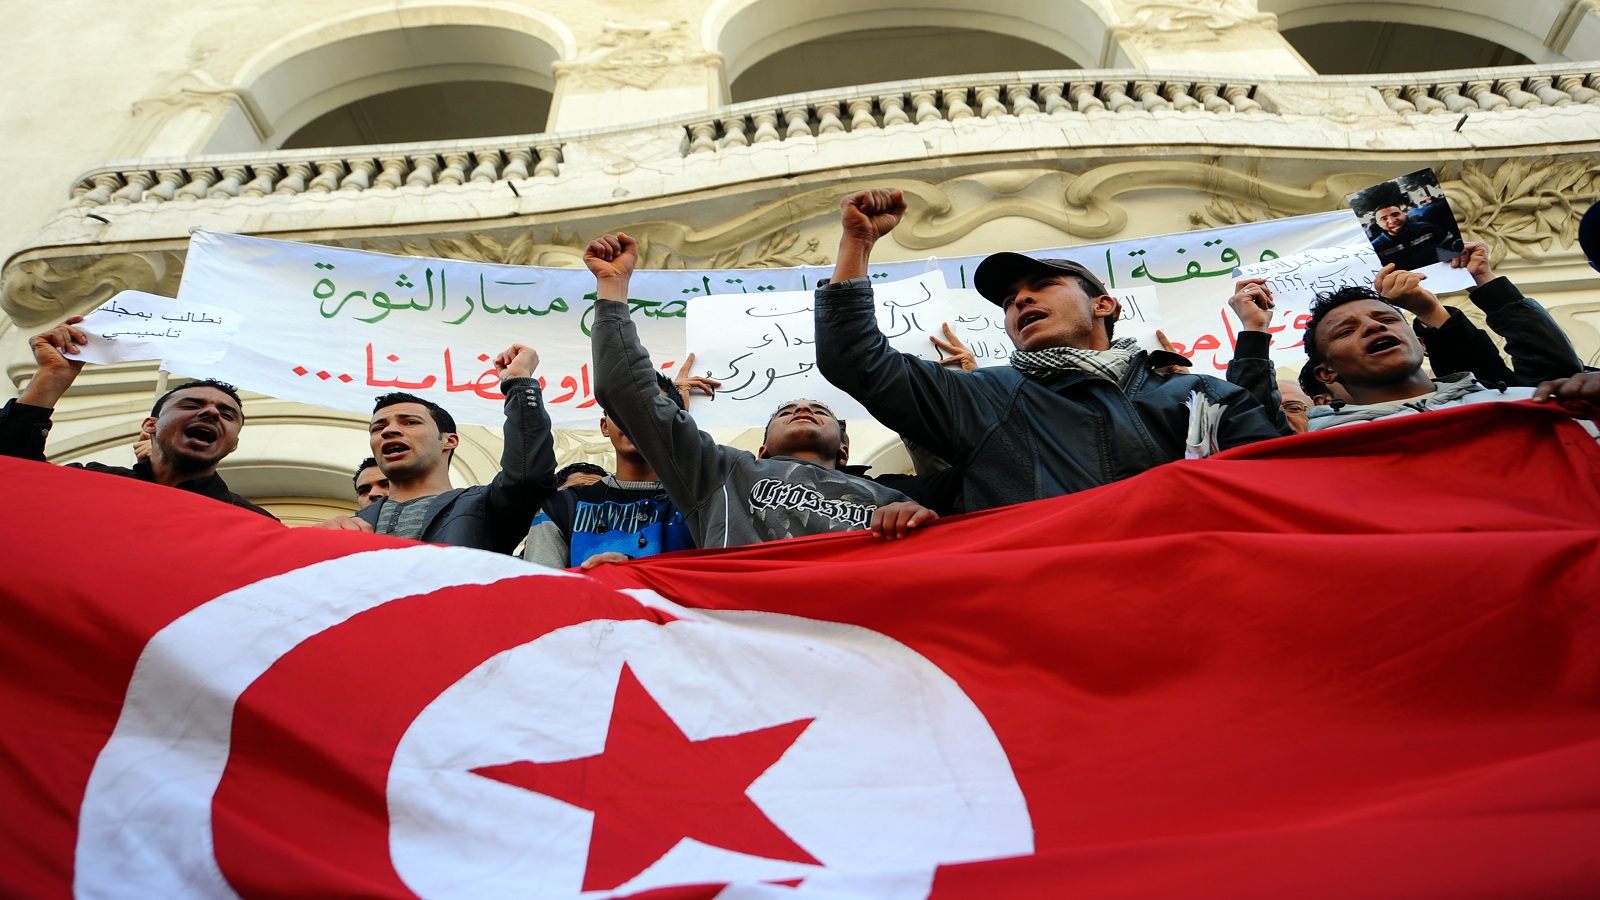 حركة "تحيا تونس":يوسف الشاهد يؤسس لما بعد السبسي